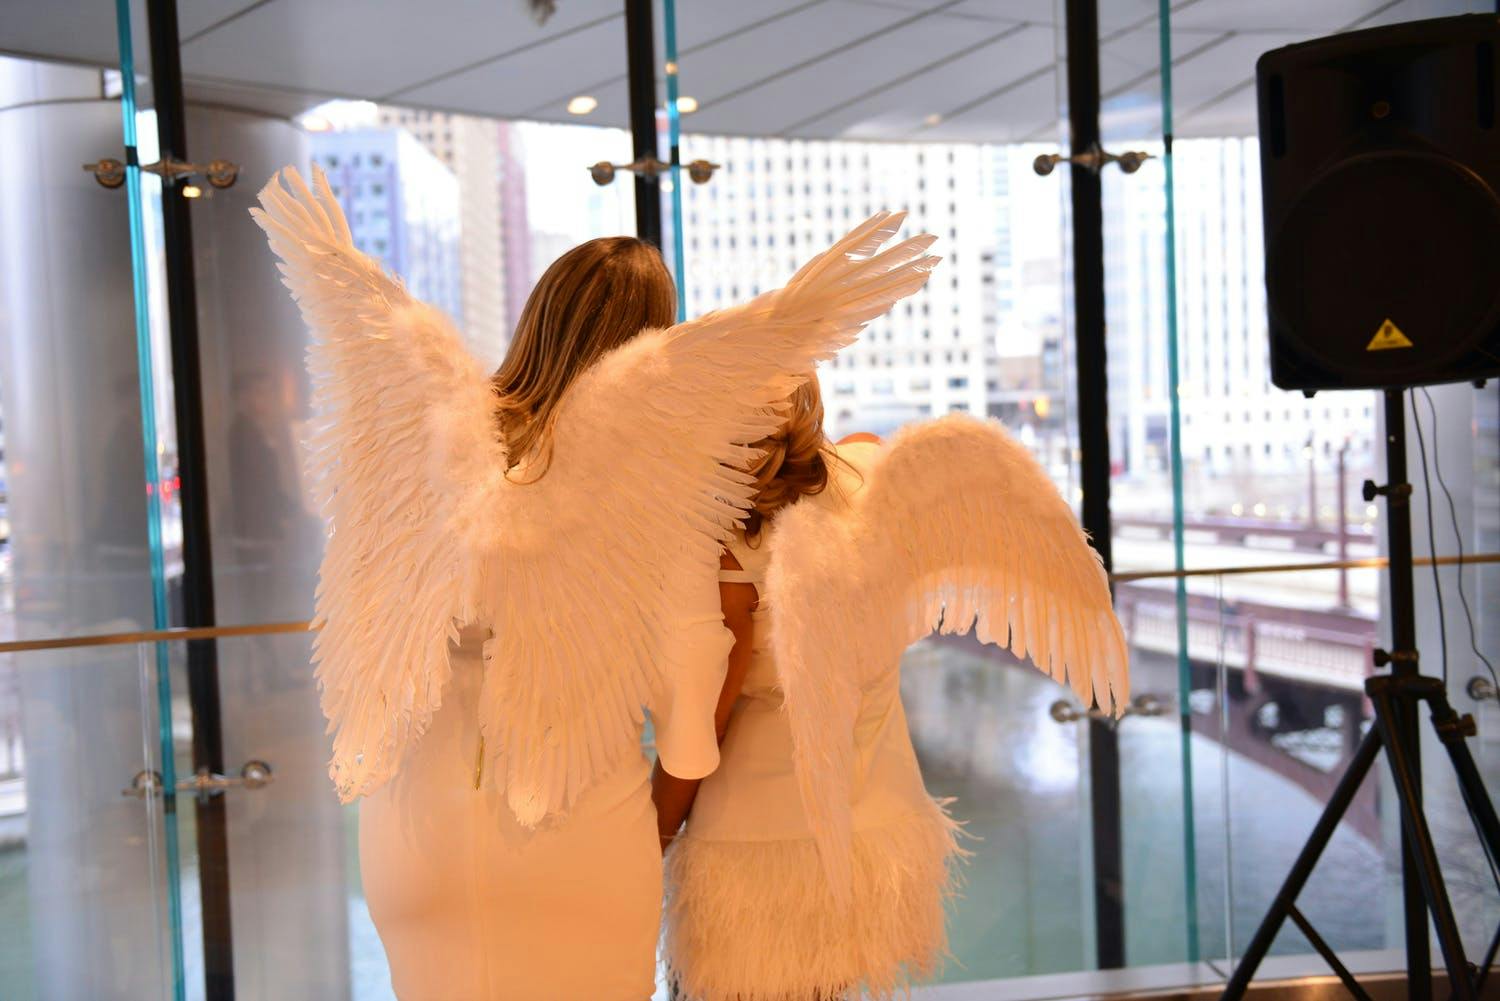 Two Women Wear Angel Wings at Baby Shower | PartySlate